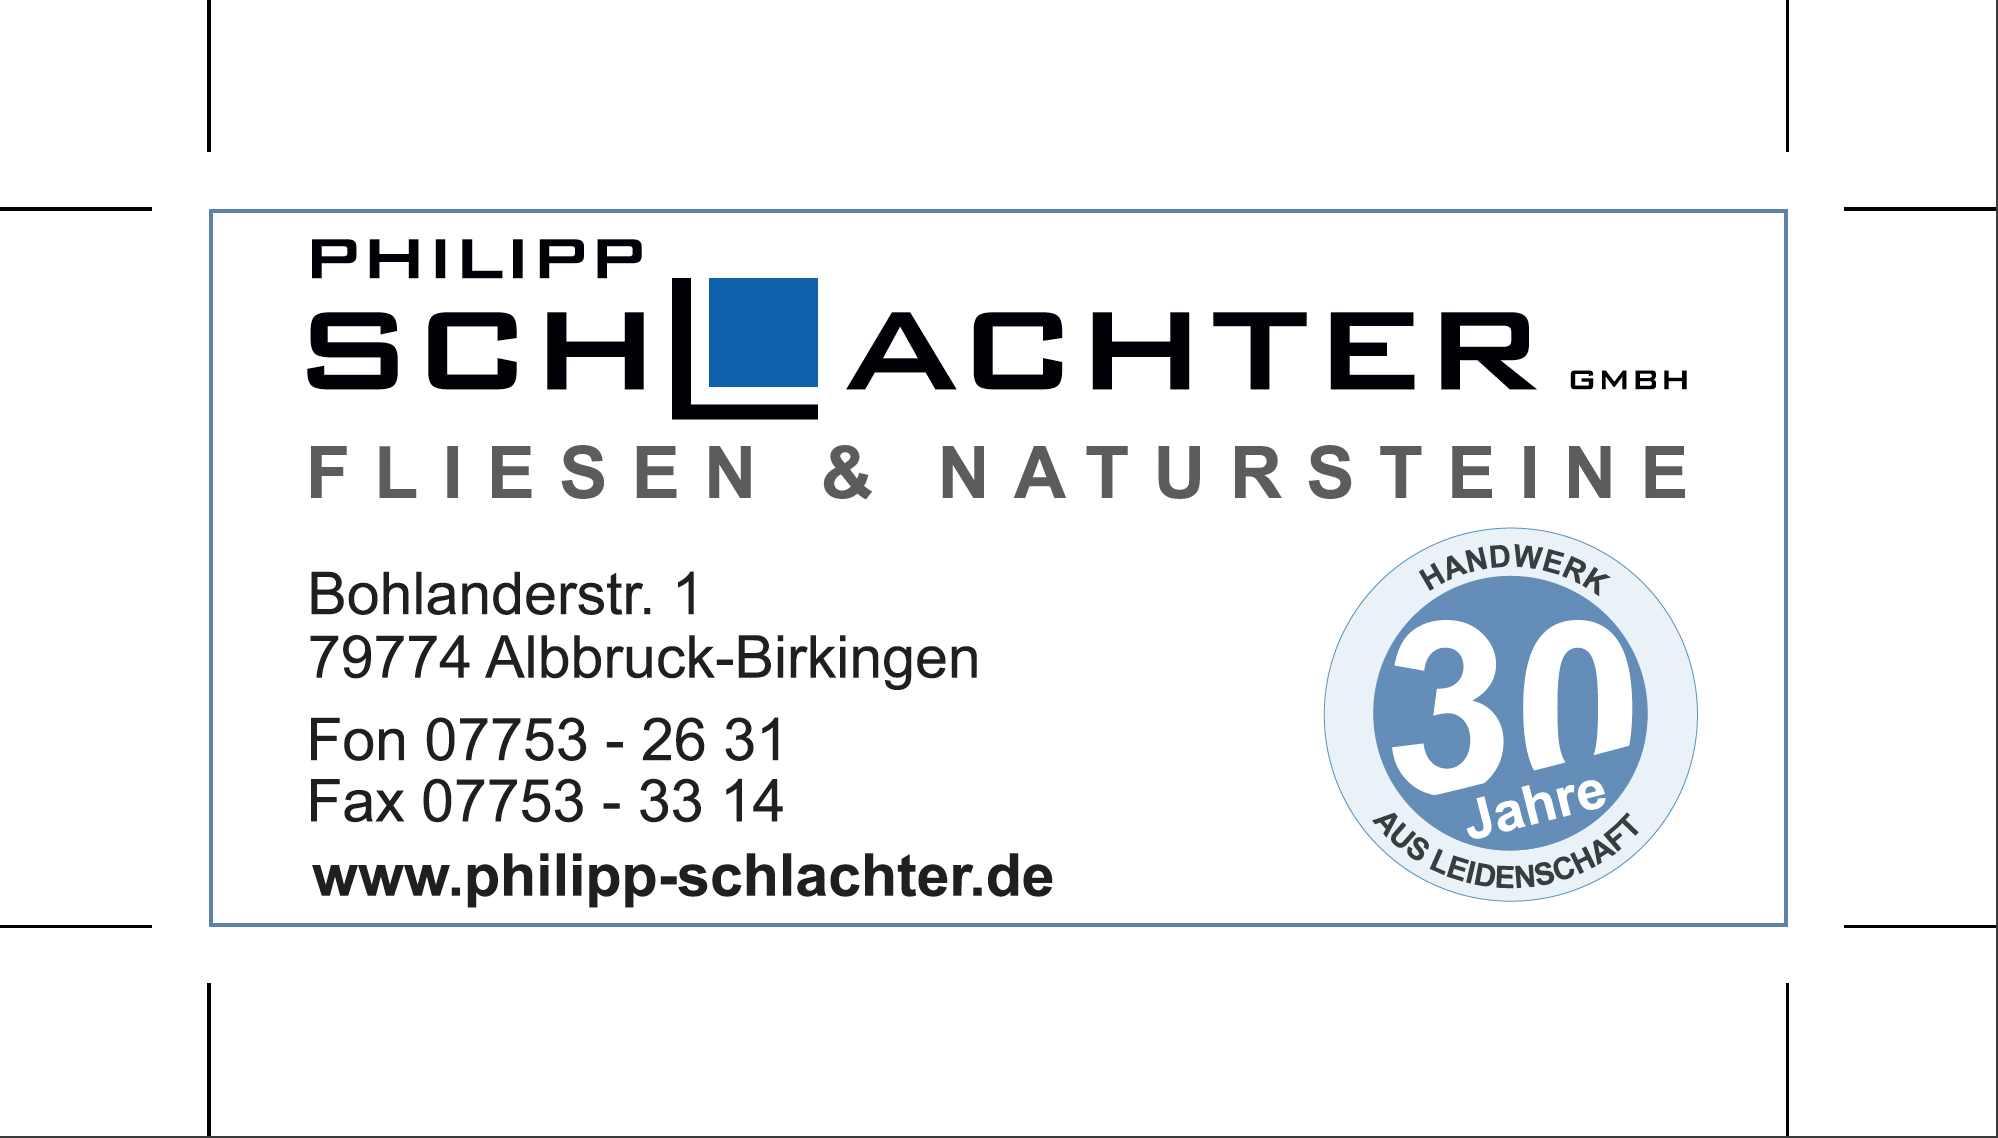 Philipp Schlachter GmbH